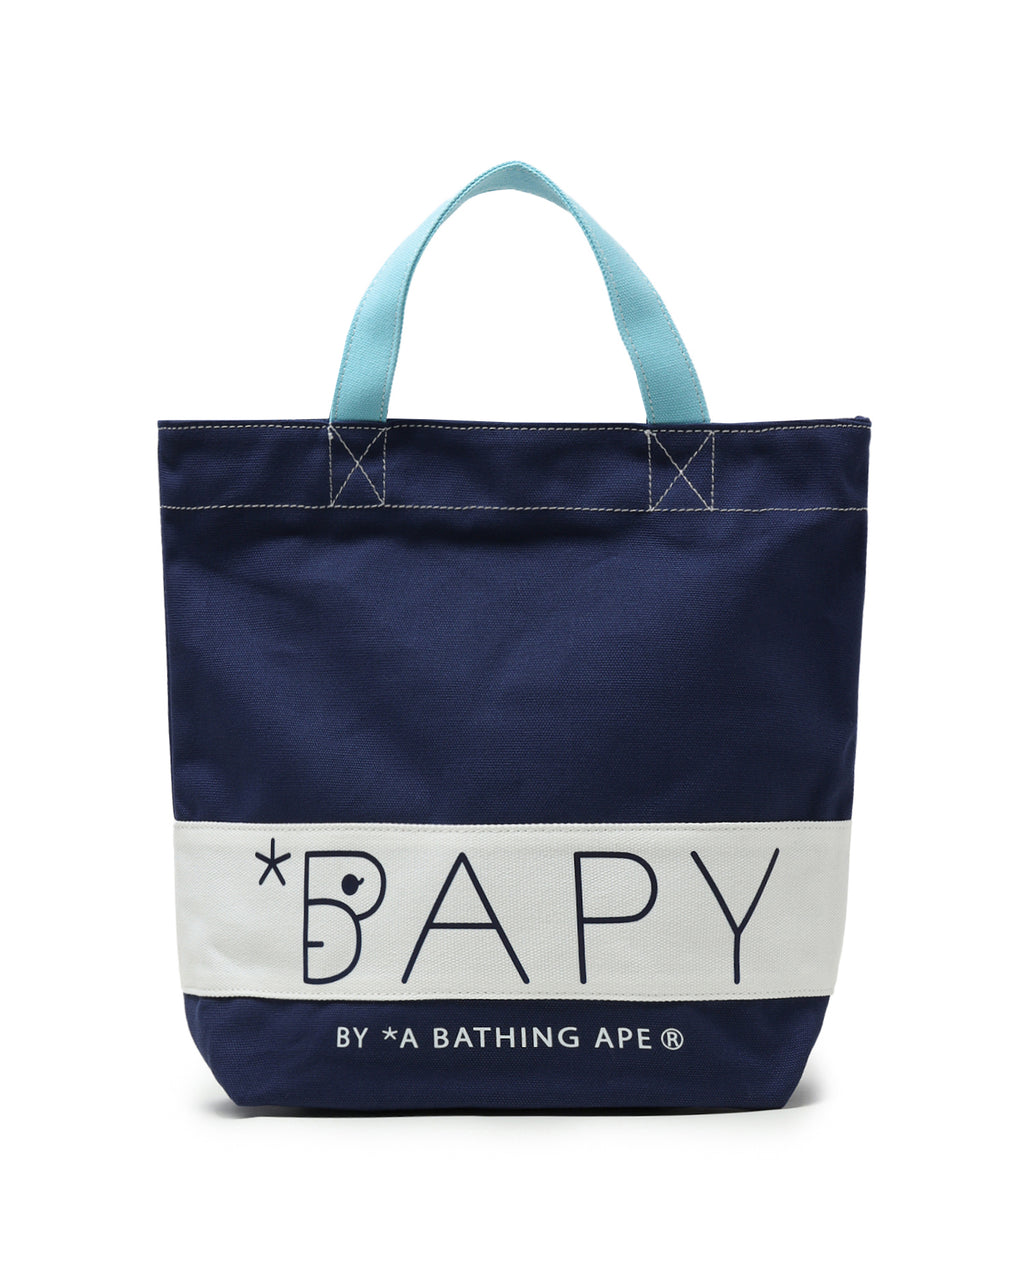 BAPY BAG LADIES | us.bape.com